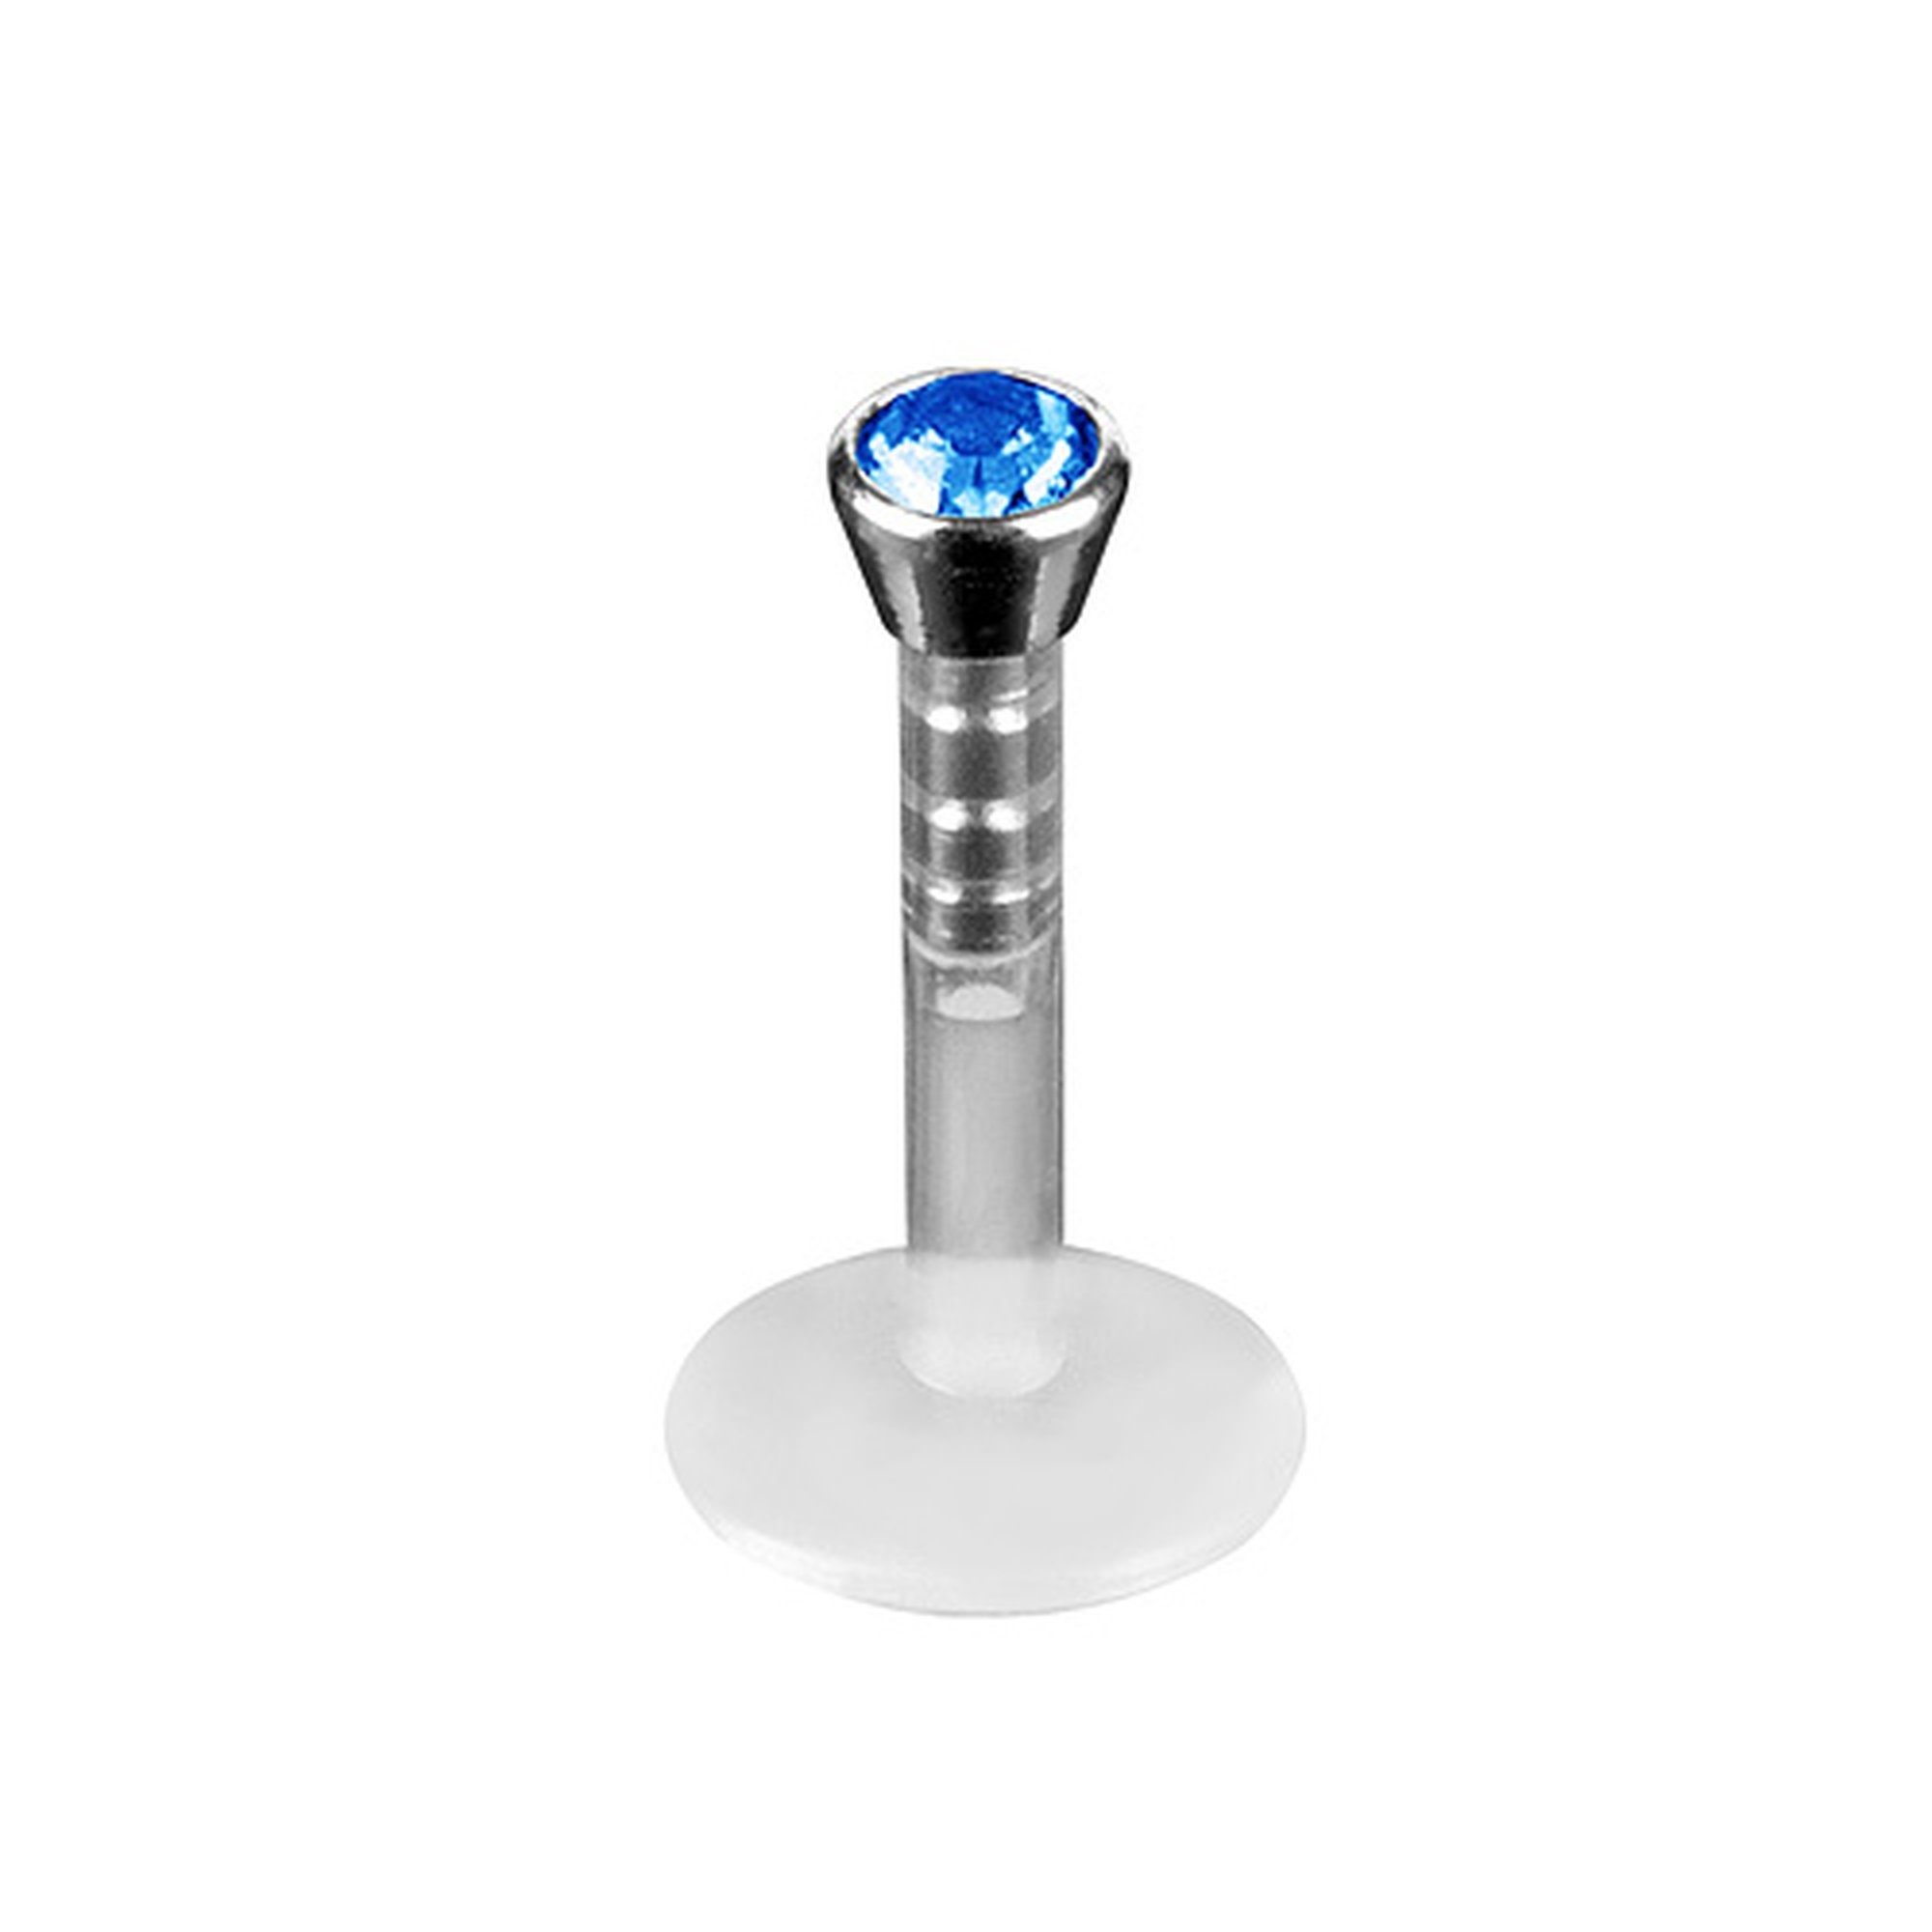 Taffstyle Piercing-Set Piercing Labret Stecker Bioflex mit Kristall, Lippenpiercing Schmuck Piercing Labret Stecker Lippenstecker Bioflex Blau